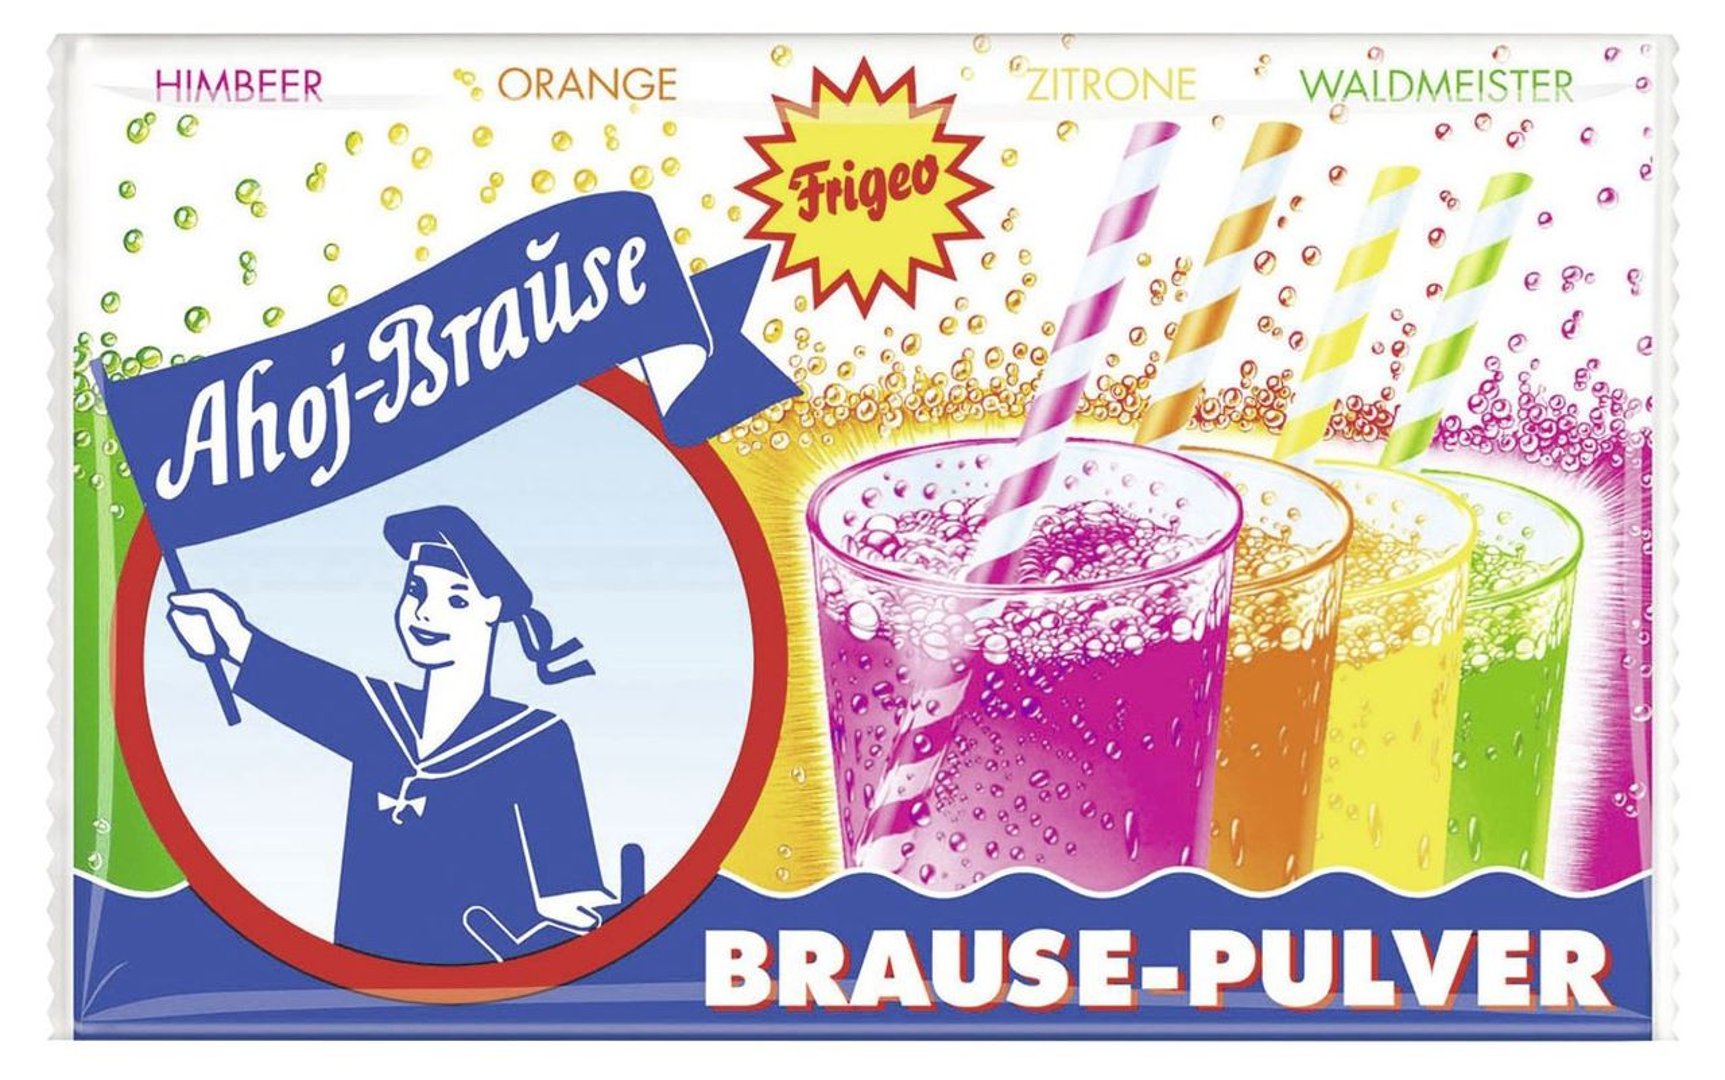 Ahoj-Brause Brause-Pulver - 28 x 58 g Packungen